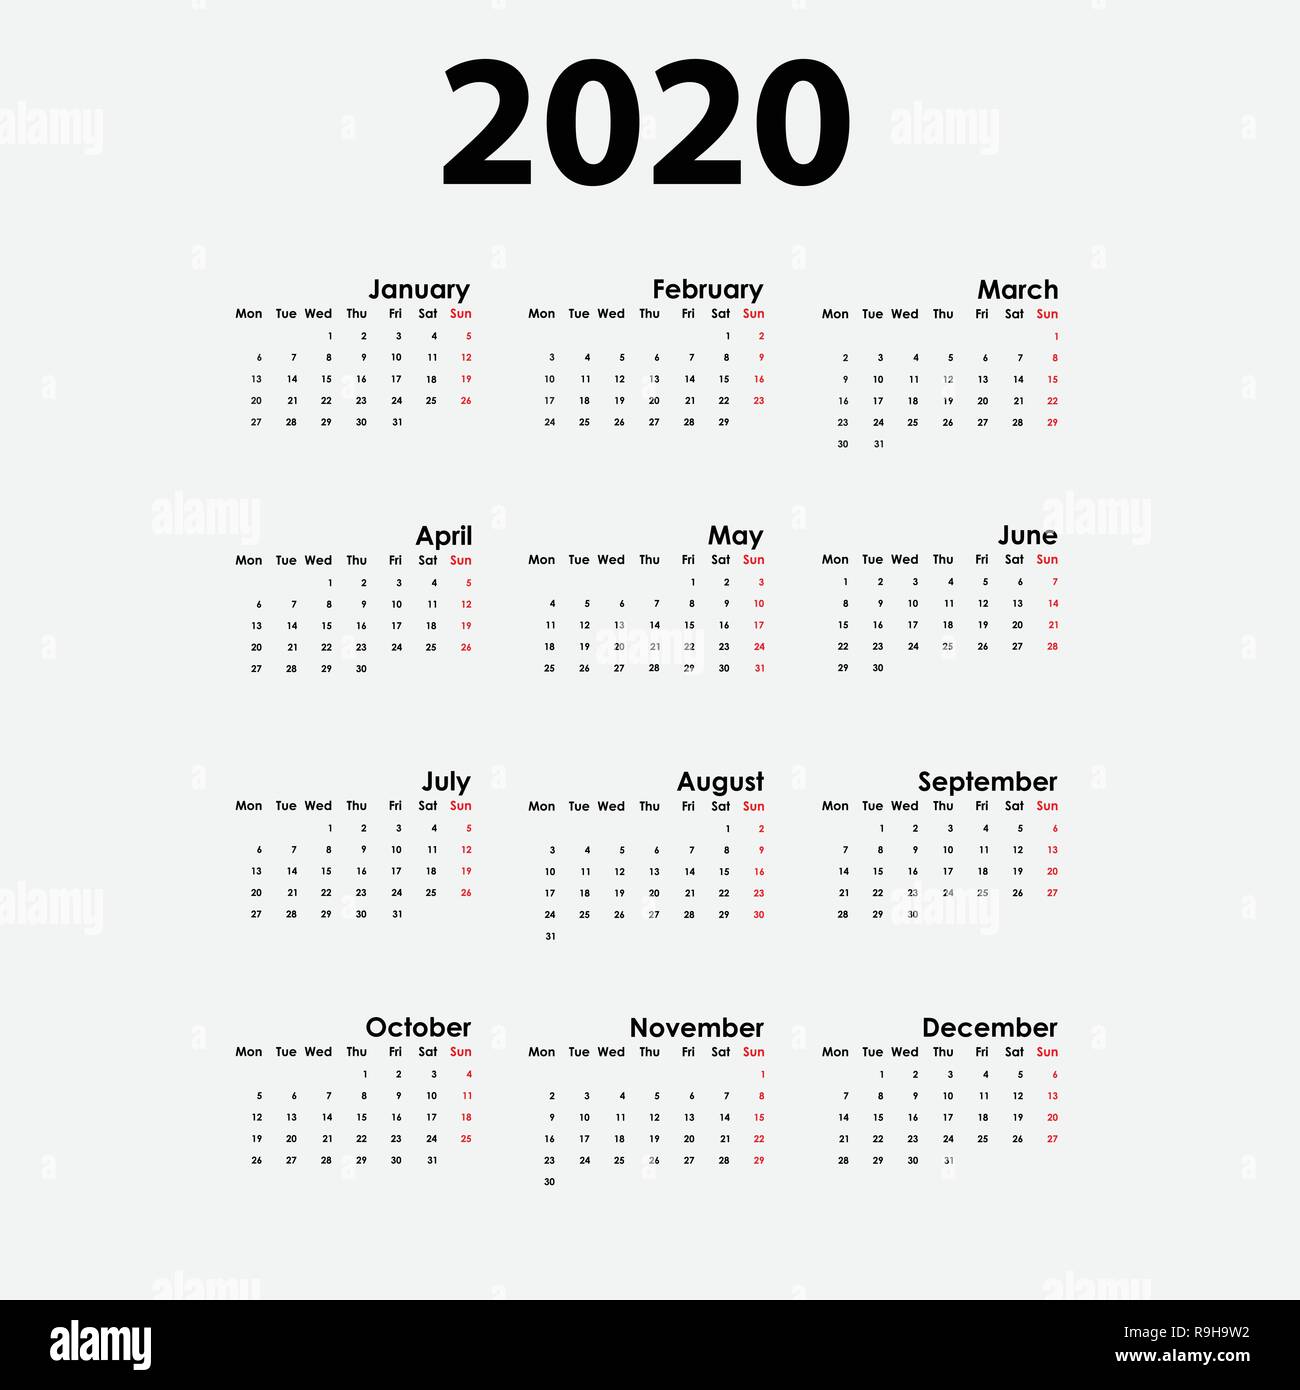 2020 Calendar Template Calendar 2020 Set Of 12 Months